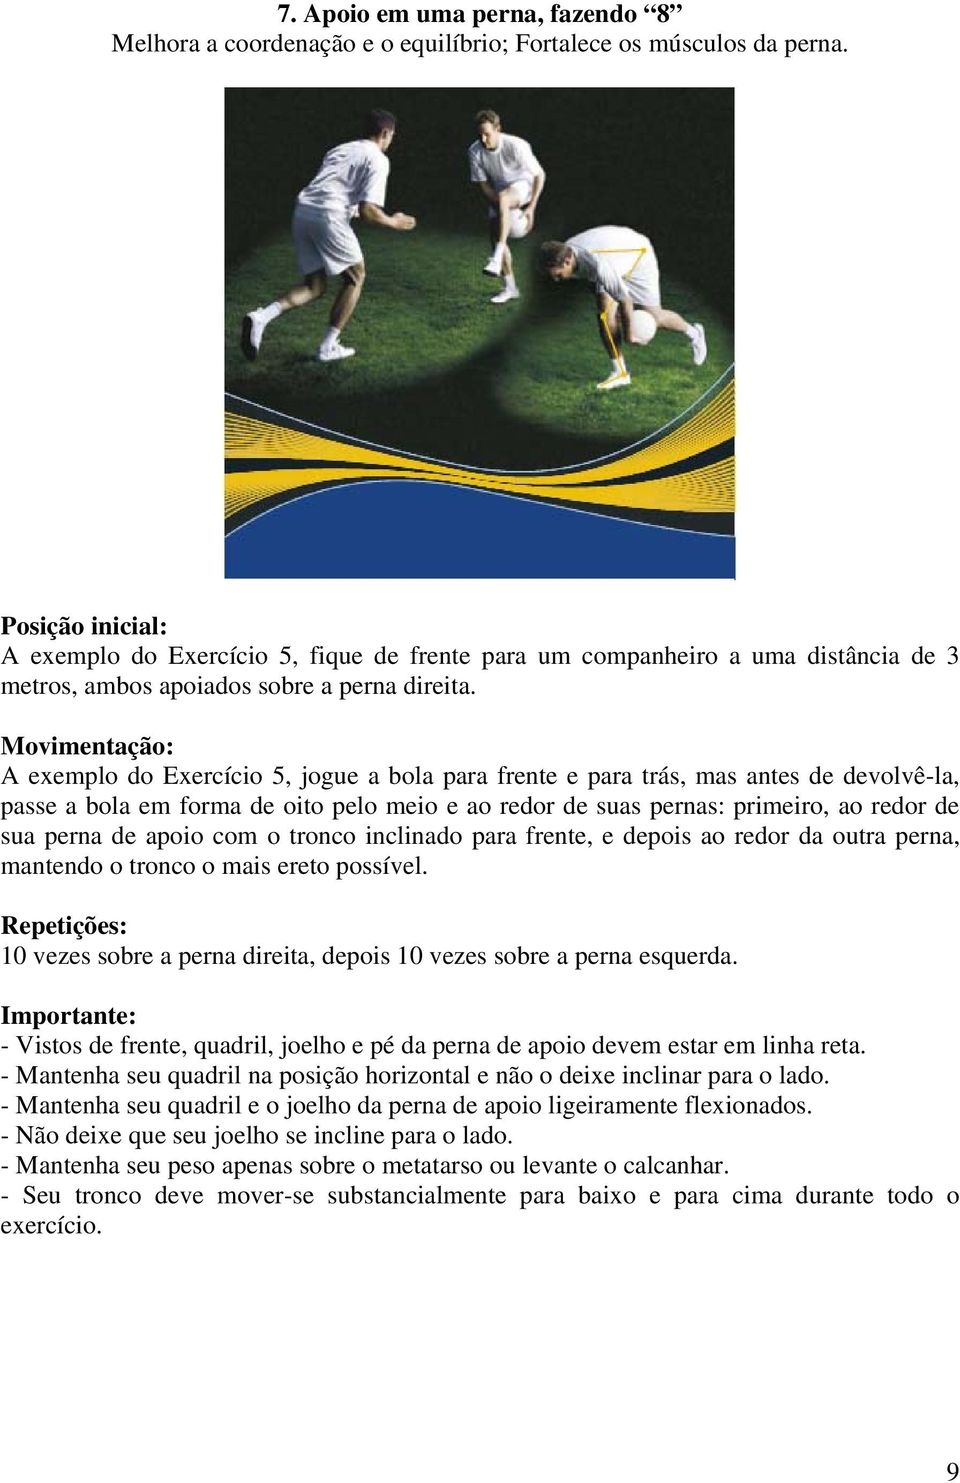 A exemplo do Exercício 5, jogue a bola para frente e para trás, mas antes de devolvê-la, passe a bola em forma de oito pelo meio e ao redor de suas pernas: primeiro, ao redor de sua perna de apoio